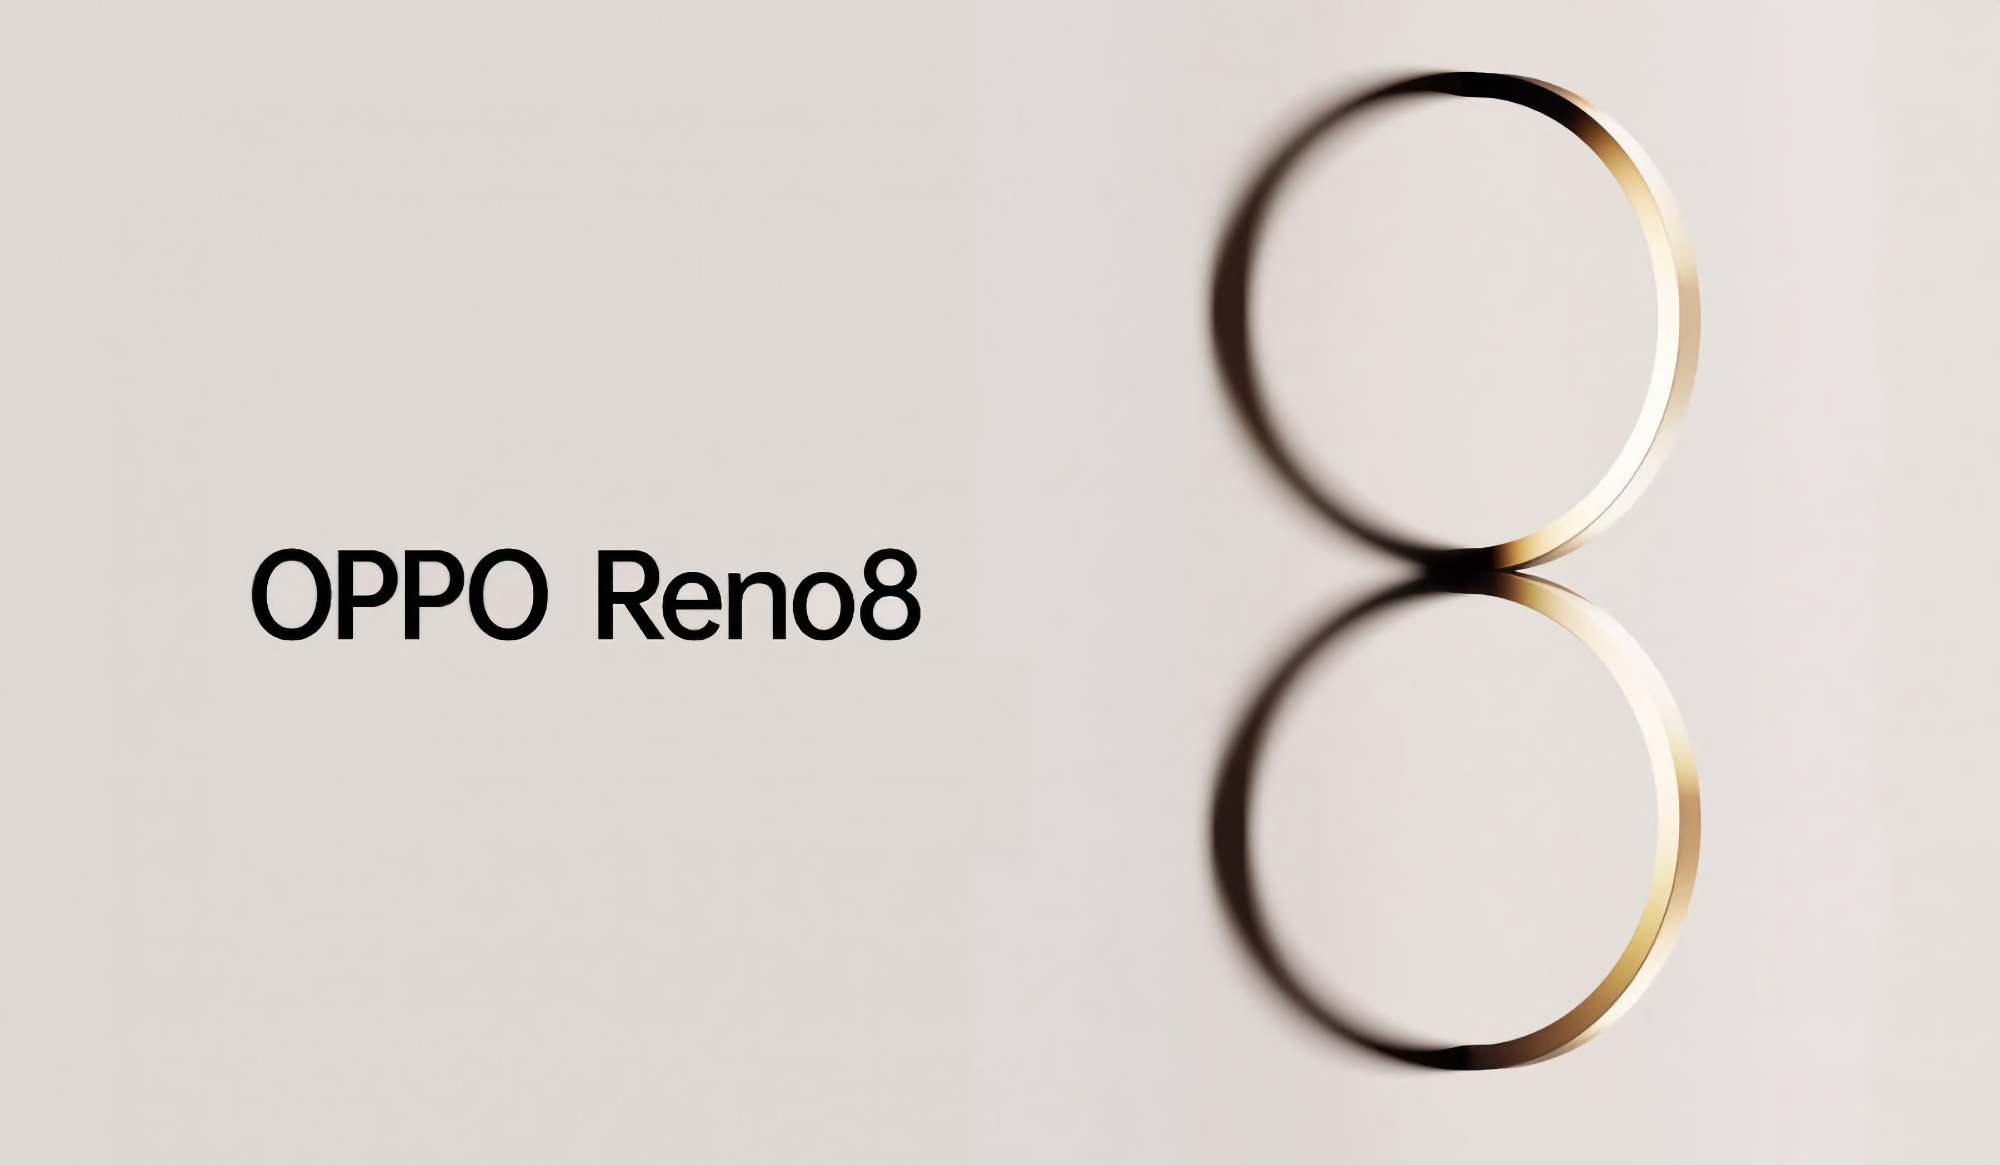 Offiziell: Die Smartphone-Reihe OPPO Reno 8 wird am 23. Mai vorgestellt